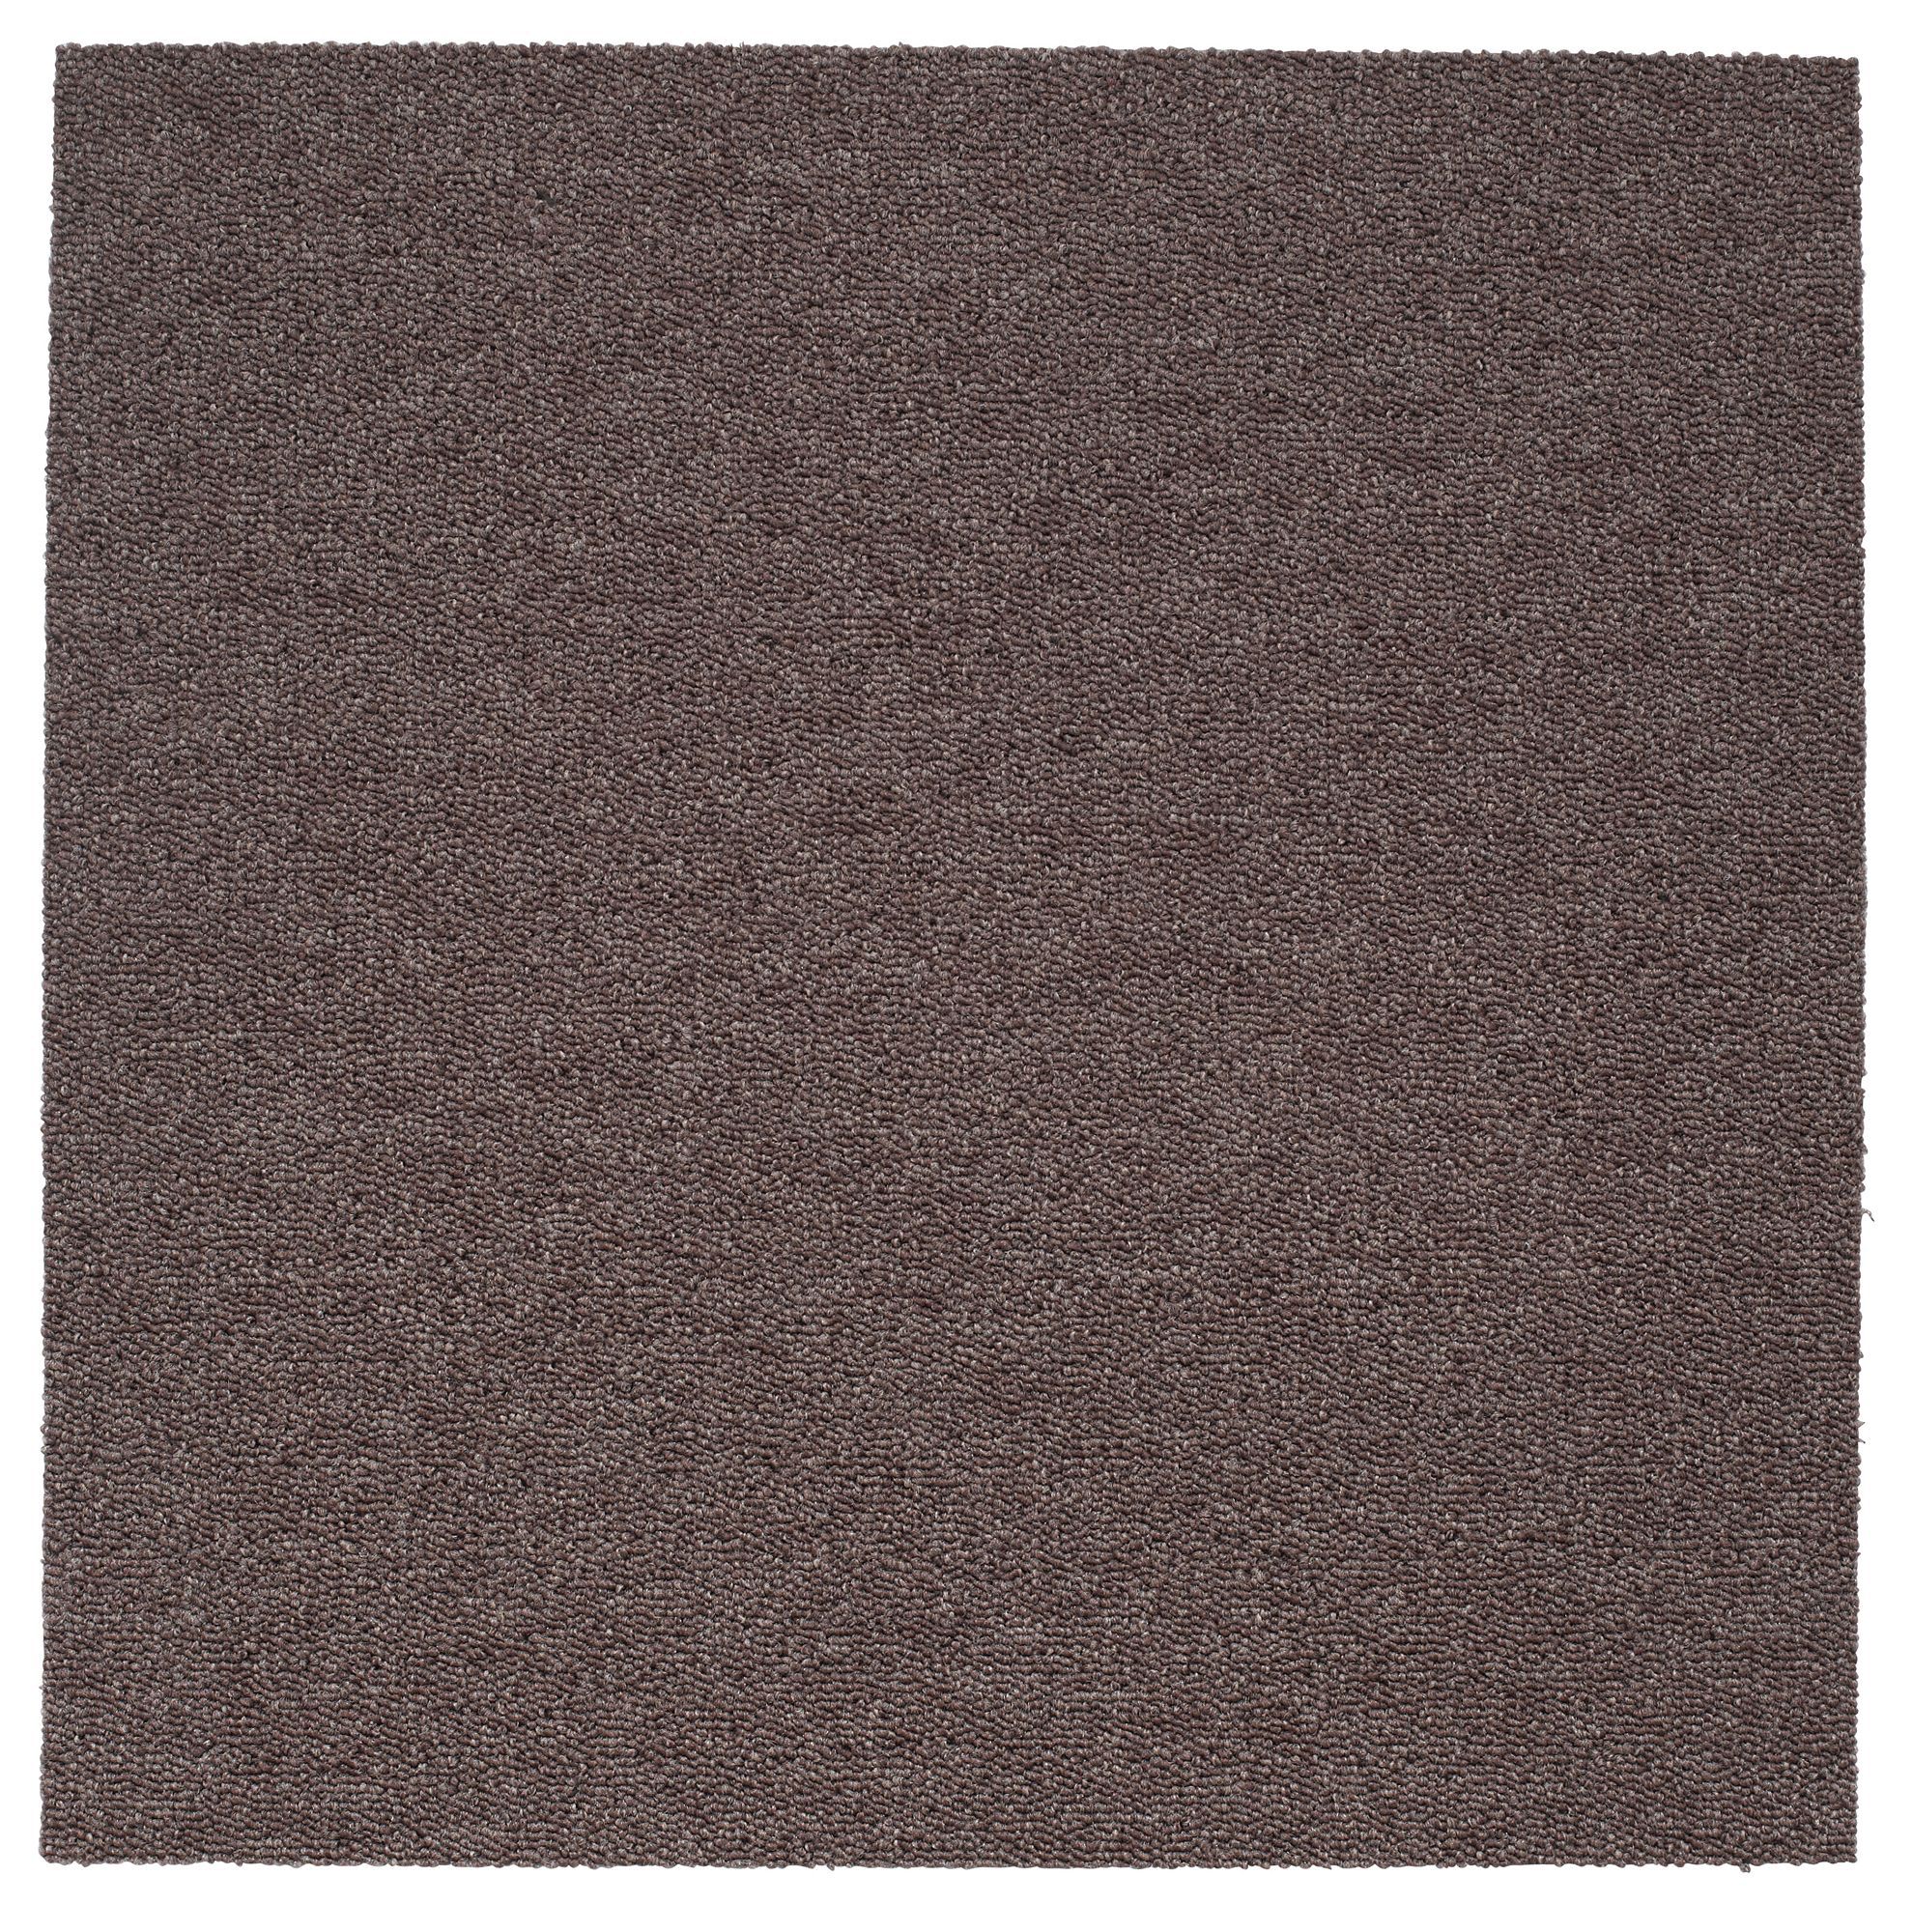 Colours Brown Loop Carpet tile, (L)500mm